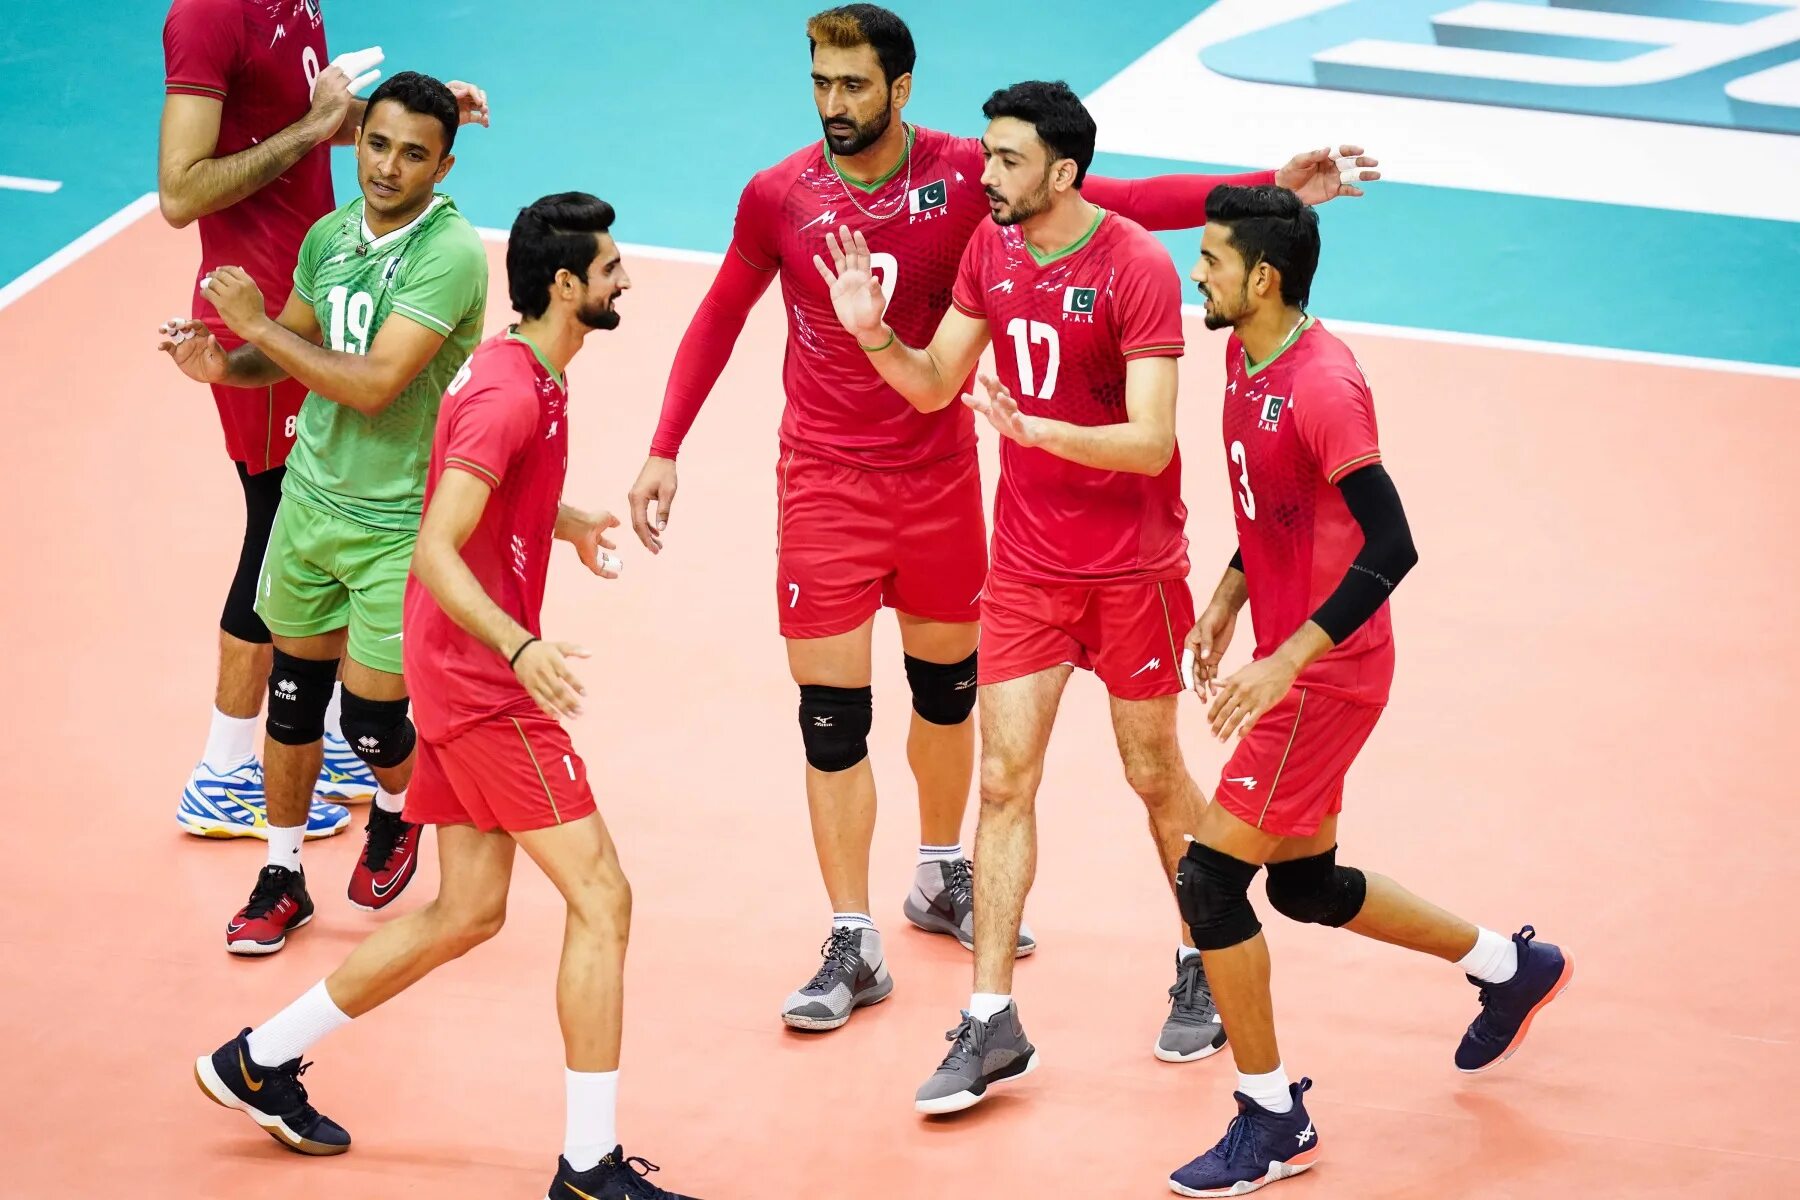 Сборная Иран волейбол. Сборная Ирана по волейболу мужчины. Сборный волейбол Ирана. Сборная Таиланда по волейболу мужчины. Видео волейбол мужчины